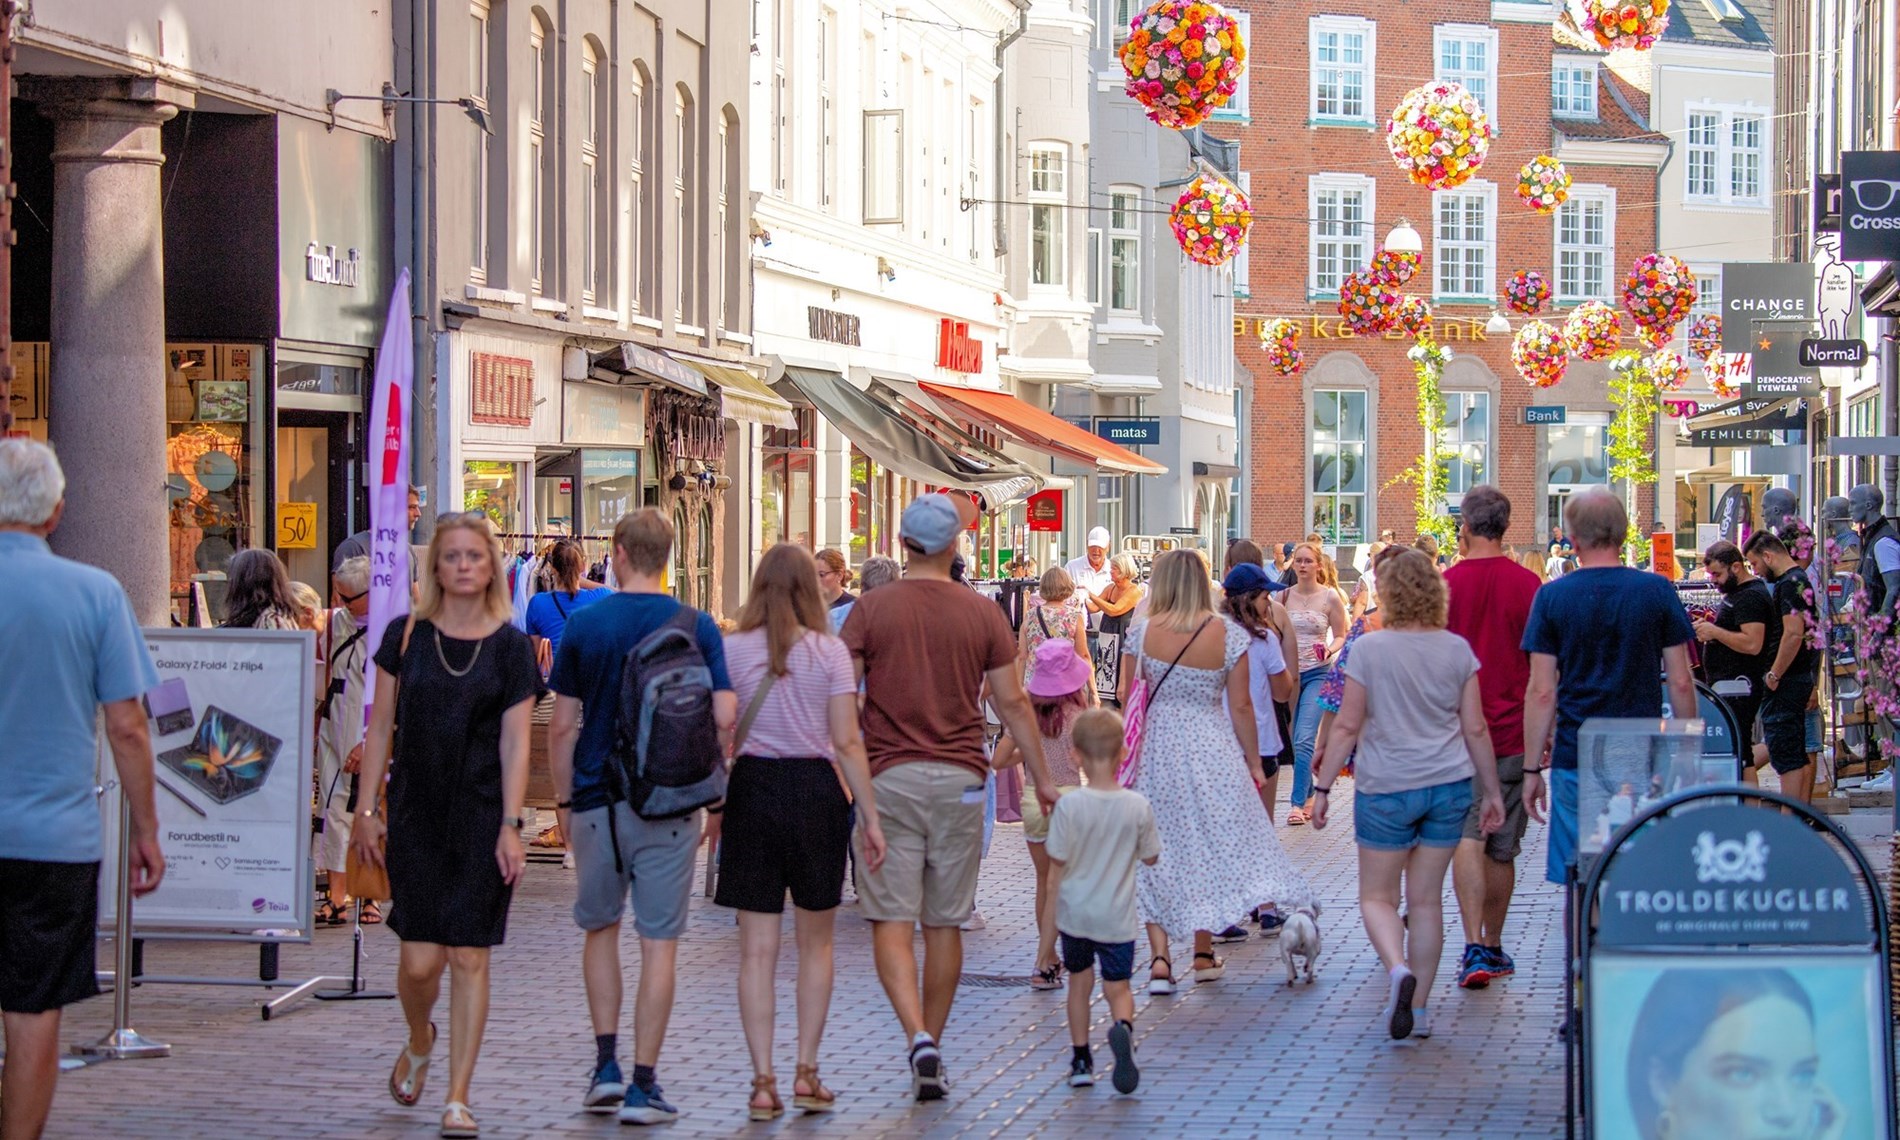 Sommerklædte mennesker i gågade i Viborg